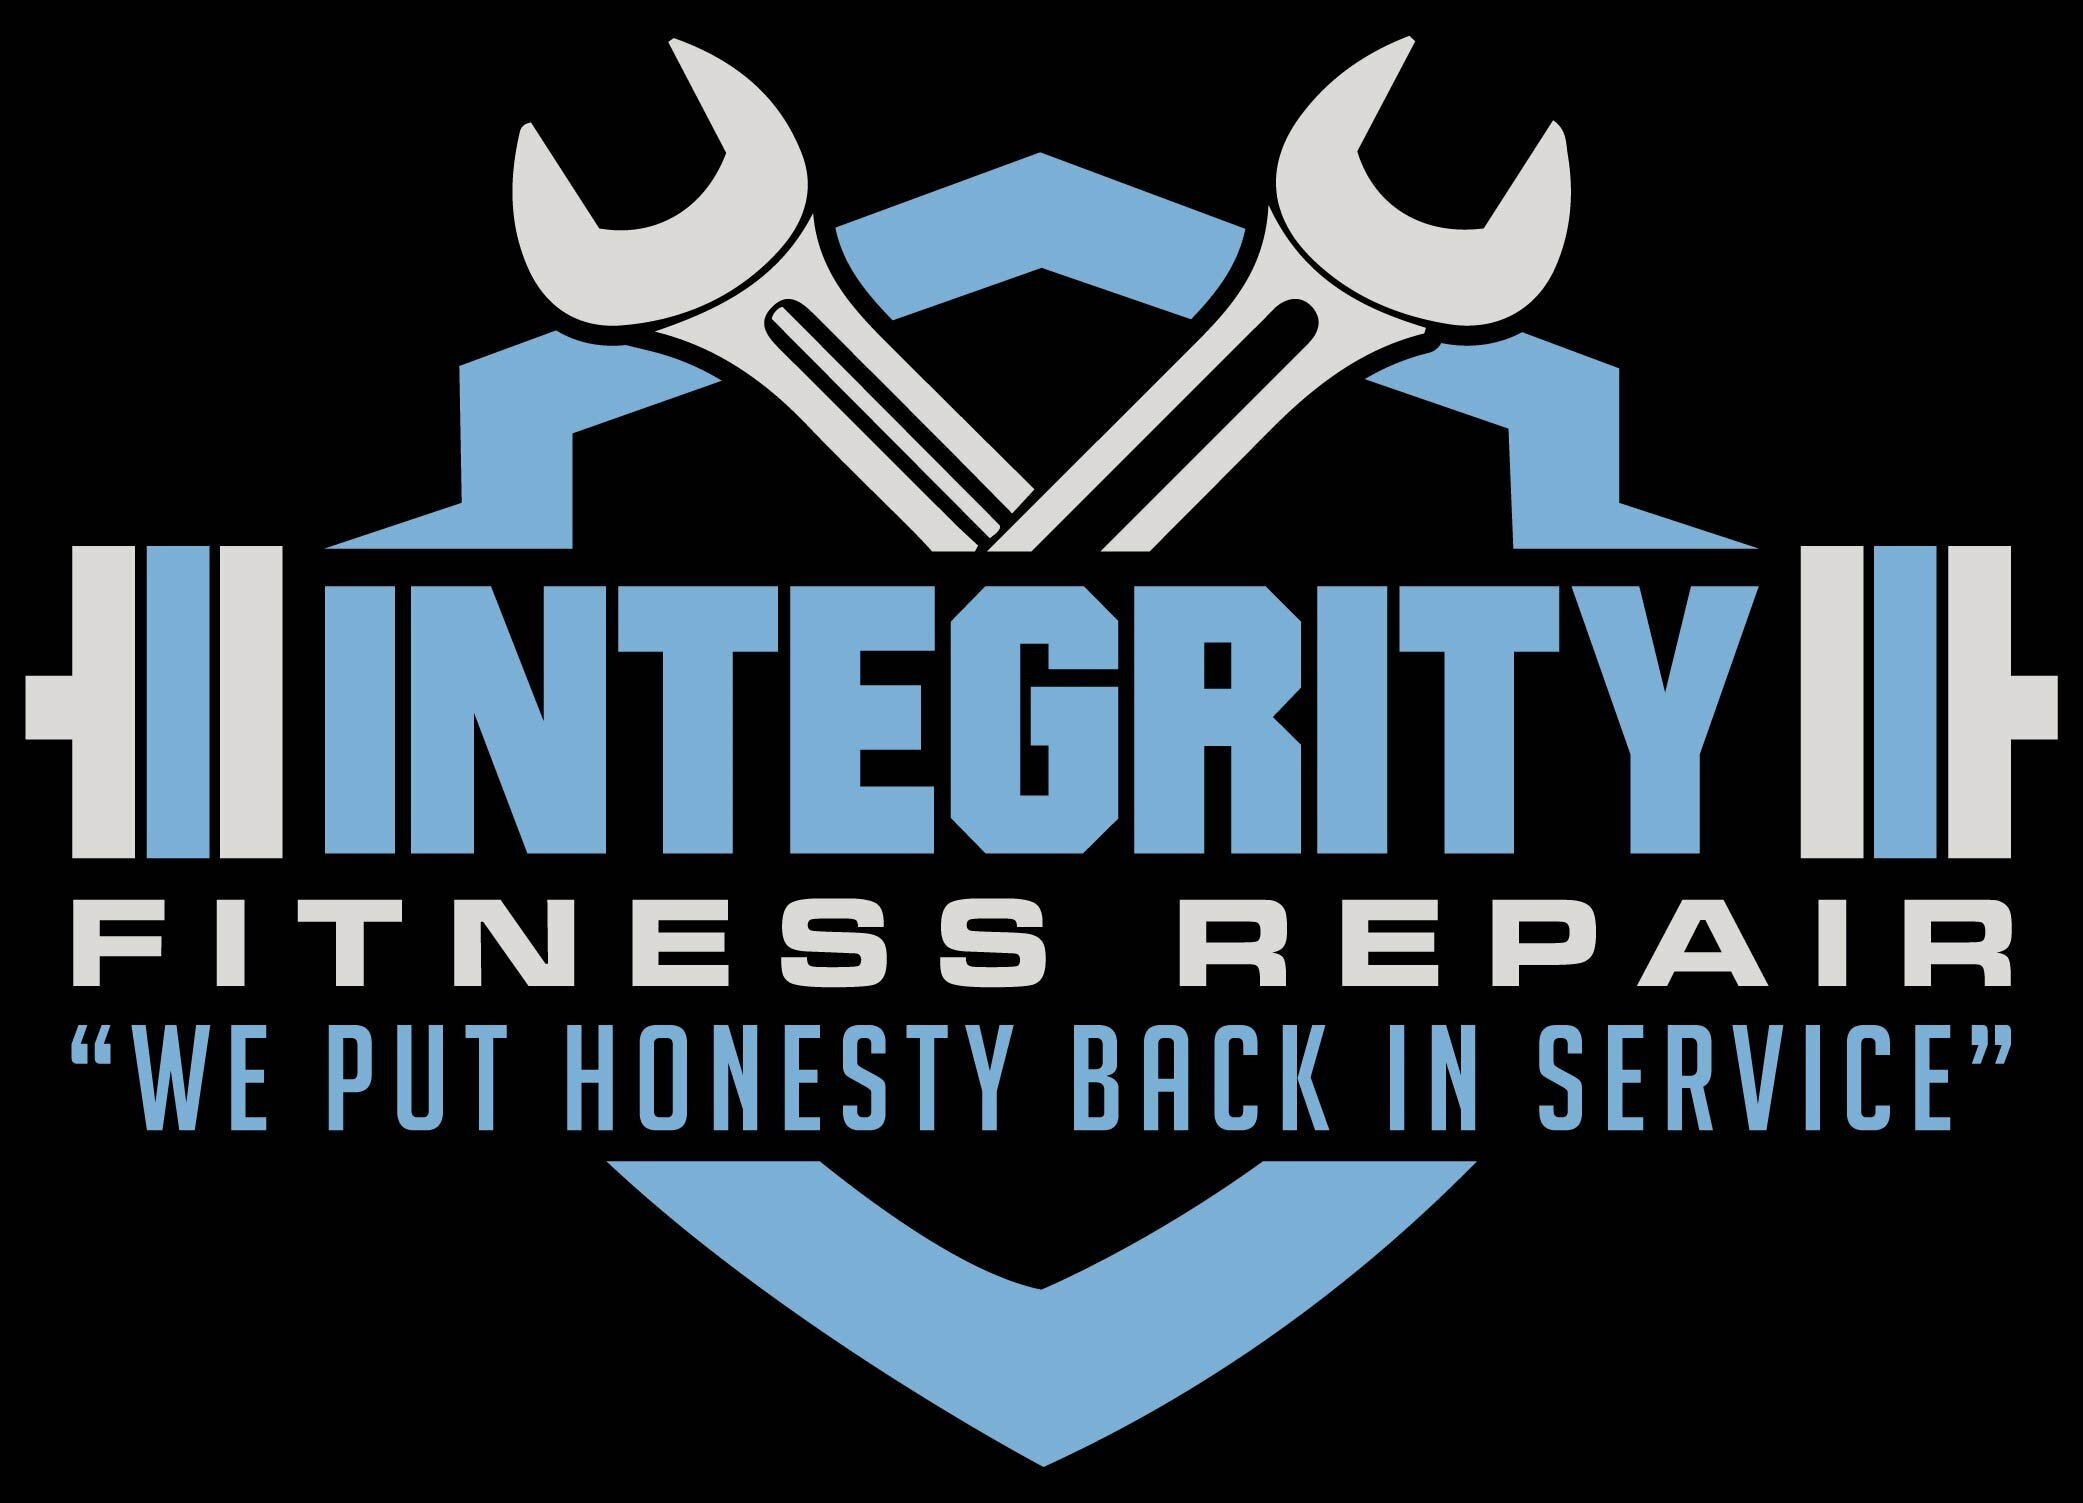 Integrity Fitness Repair